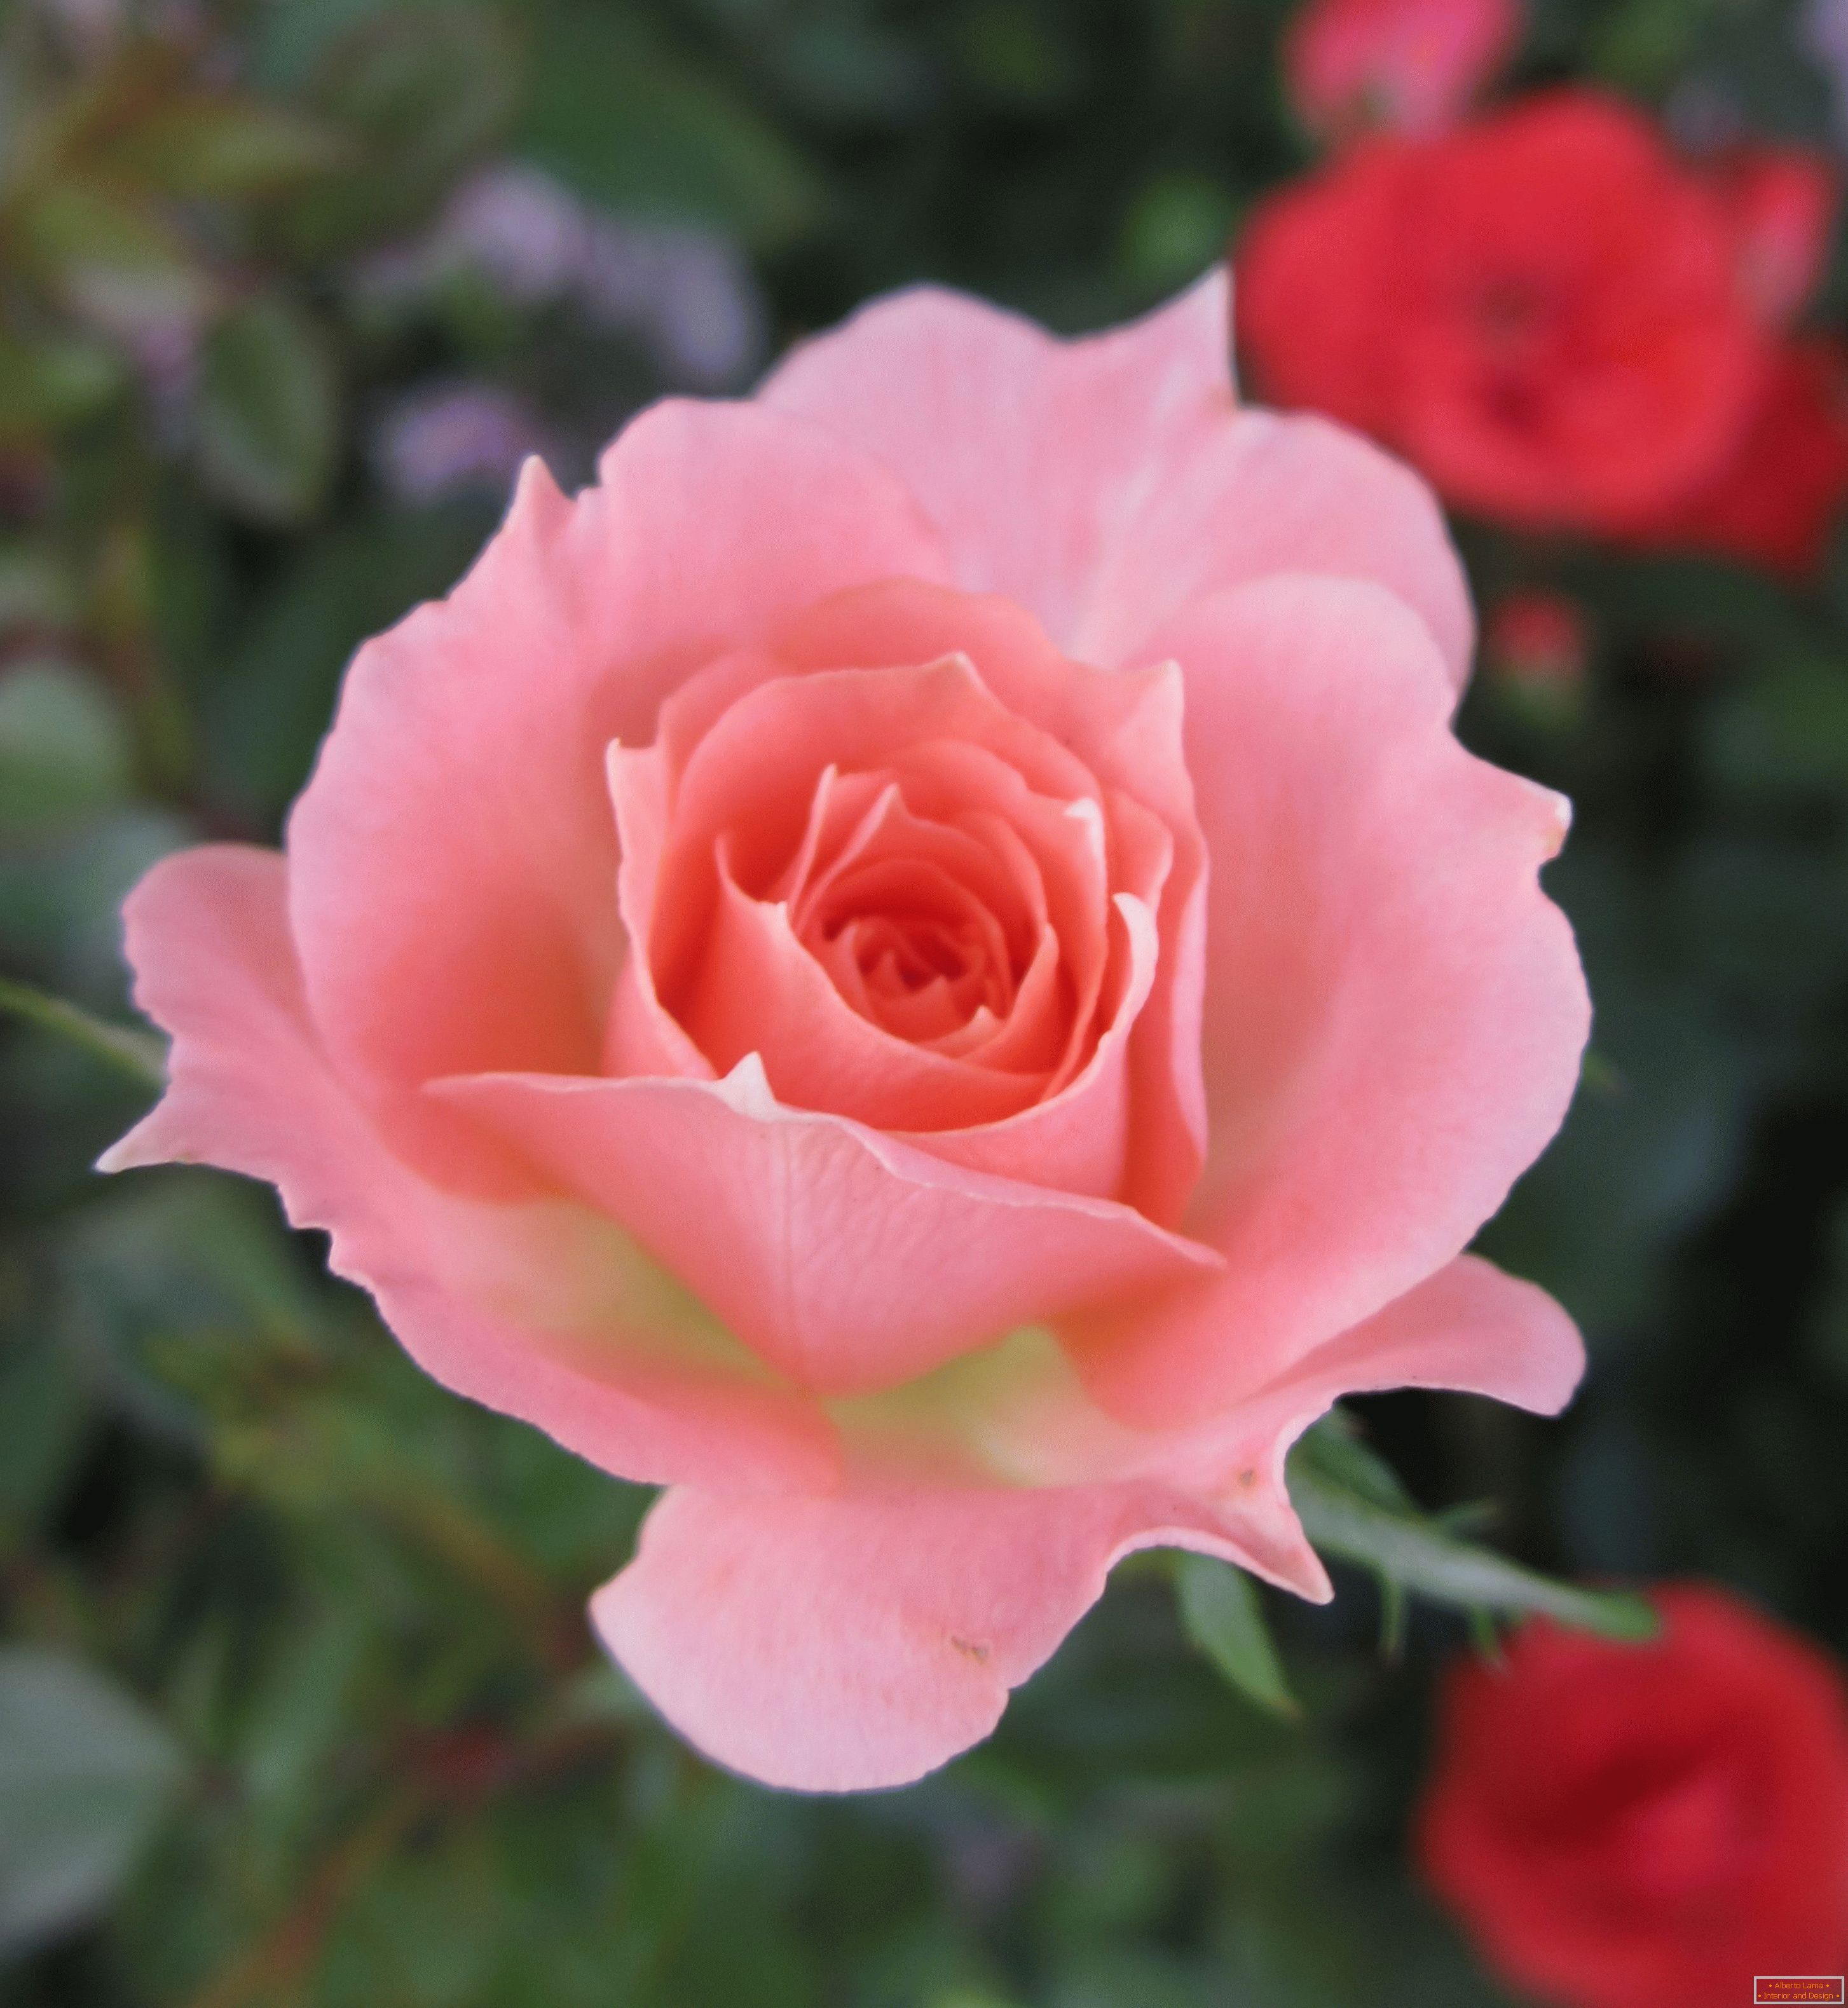 Ruža ružičaste boje u okruženju crvenog cvijeća